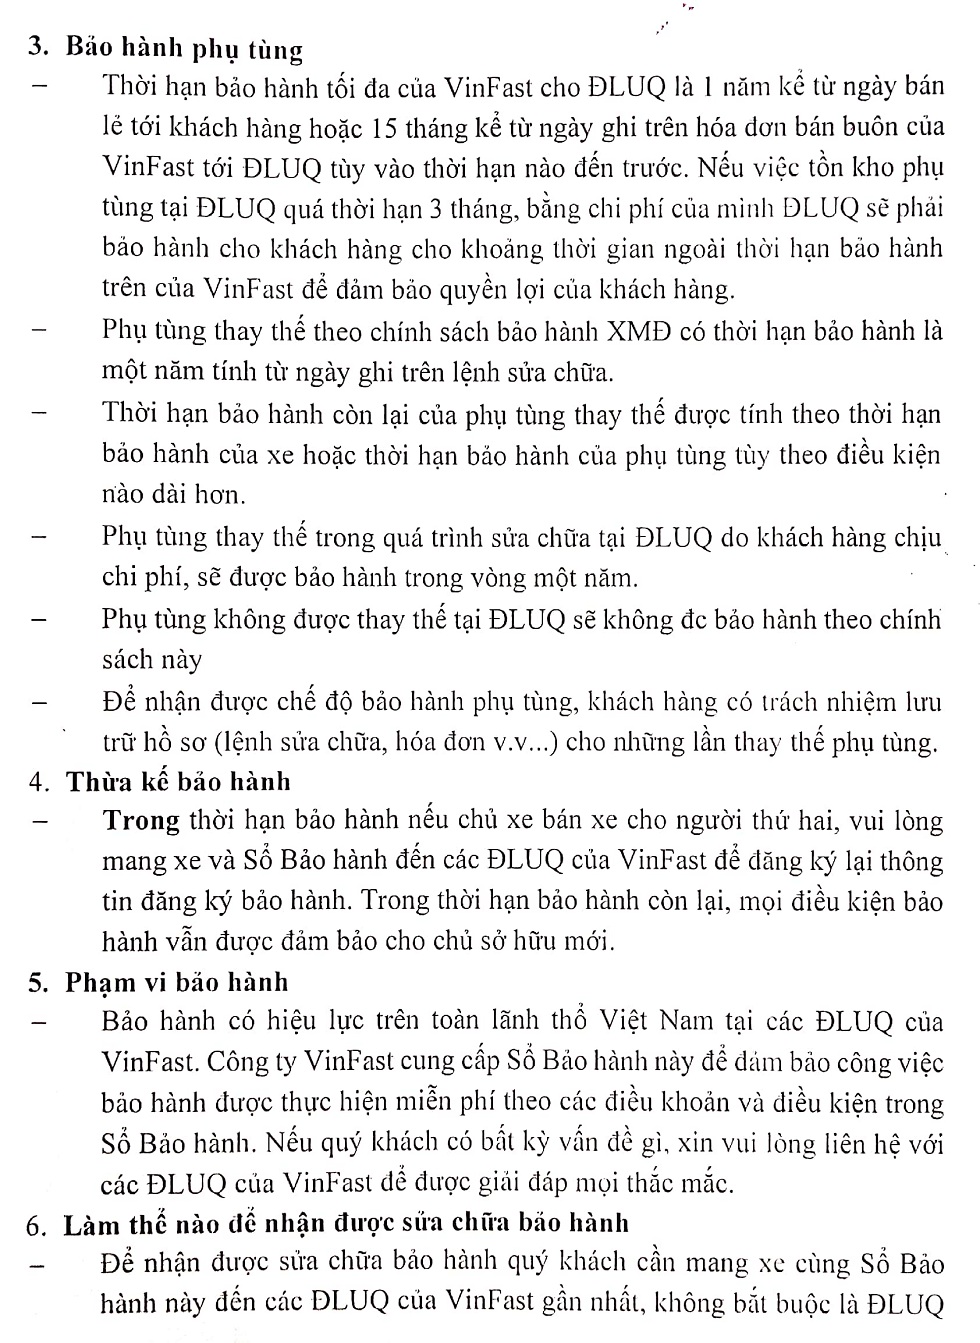 Thoi han bao hanh xe may dien VinFast Klara 2 - Thời hạn bảo hành xe máy điện VinFast Klara là bao lâu ?